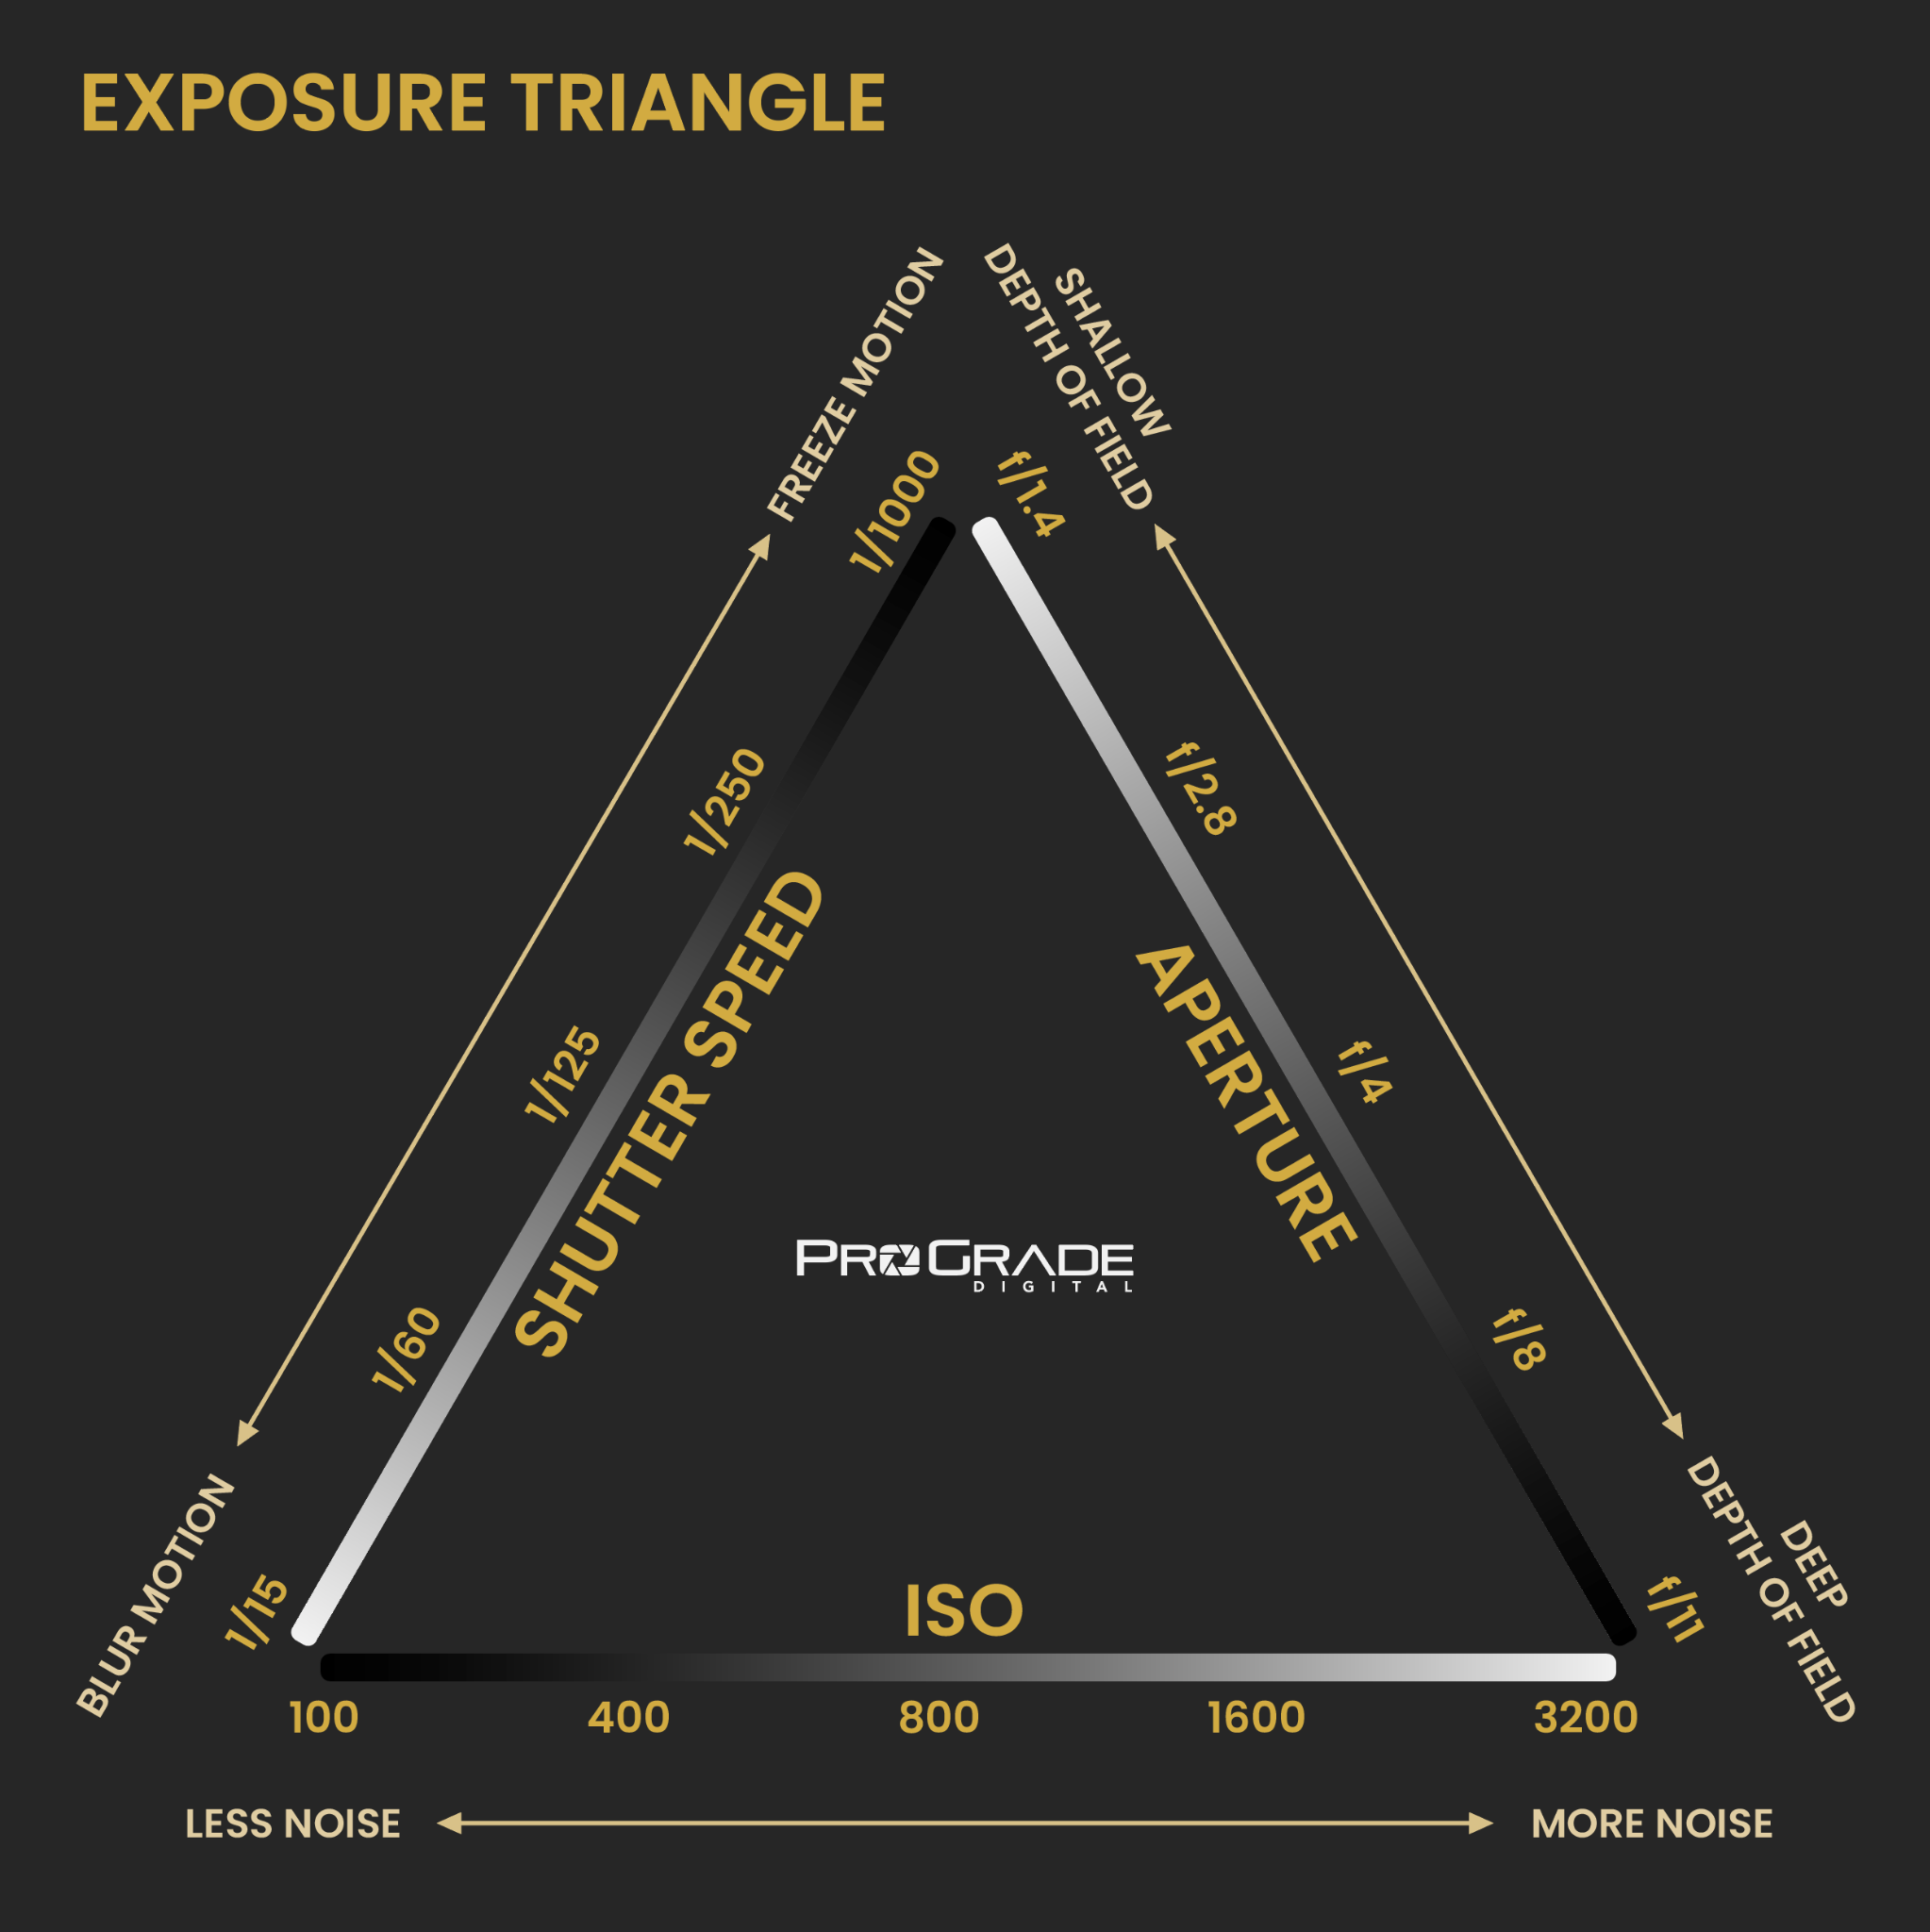 Understanding Exposure, Part 1: The Exposure Triangle